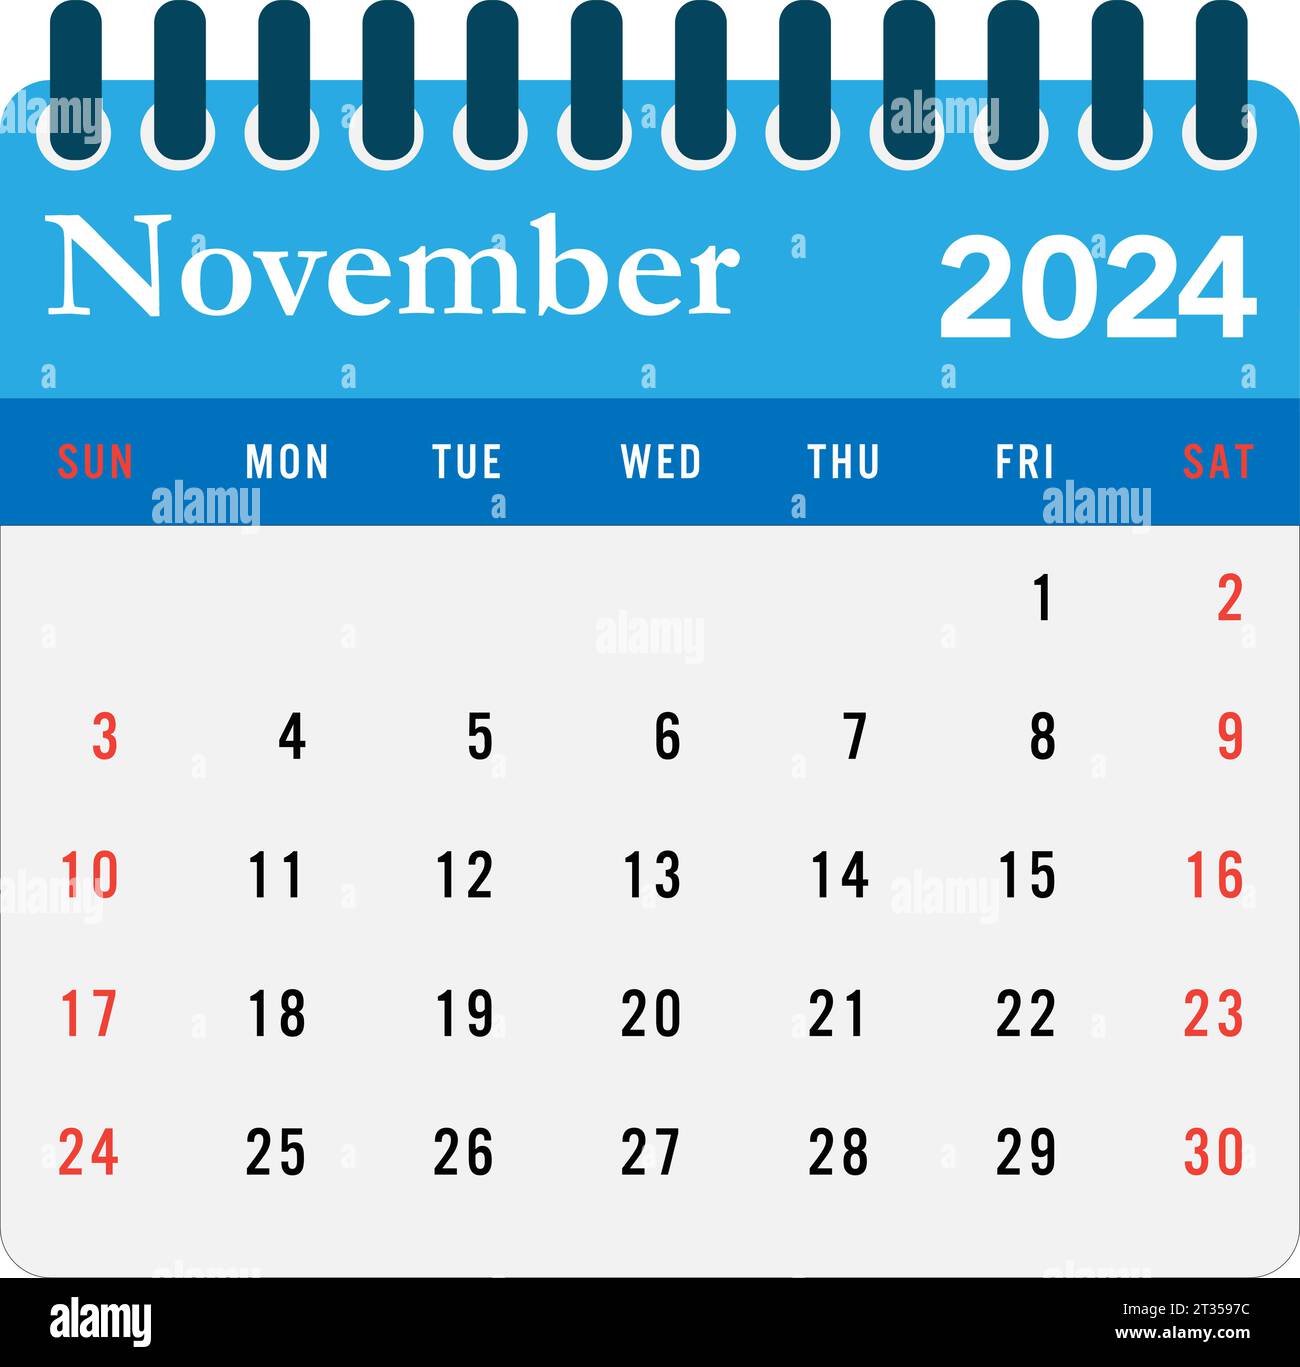 November 2024 calendar Wall calendar 2024 template Stock Vector Image ...